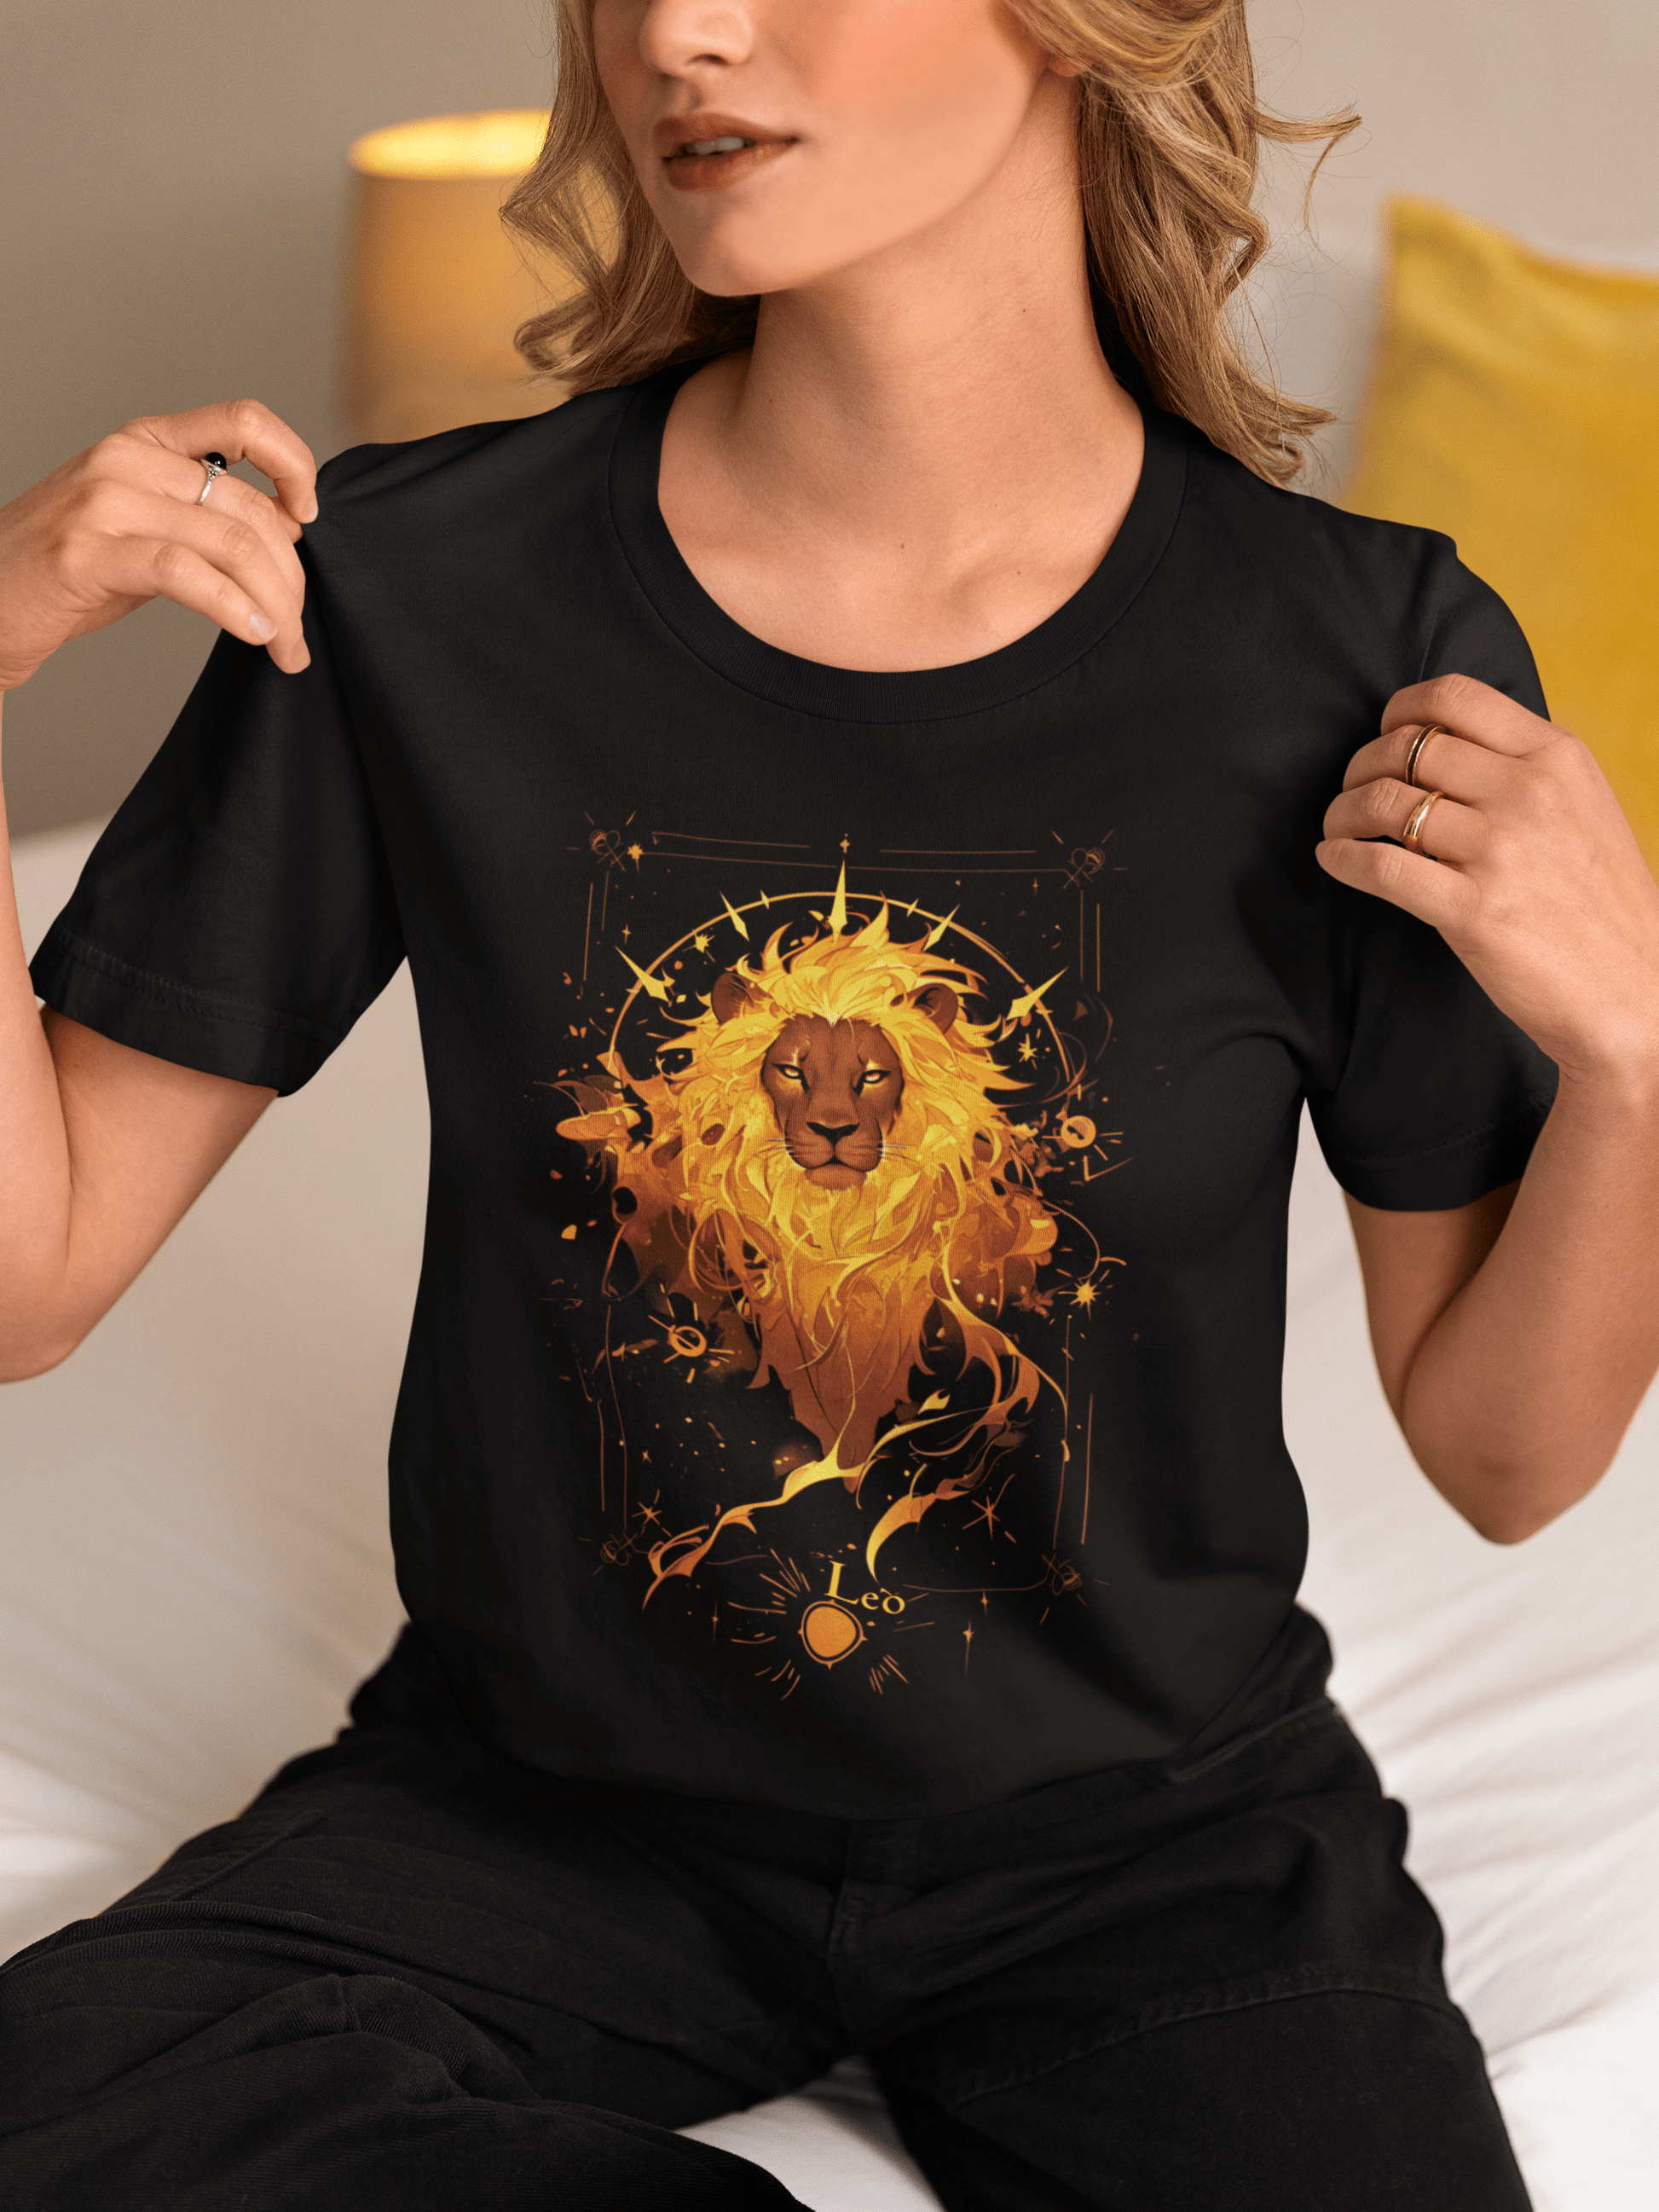 T-Shirt The Fiery Lion: Leo Tarot Card T-Shirt